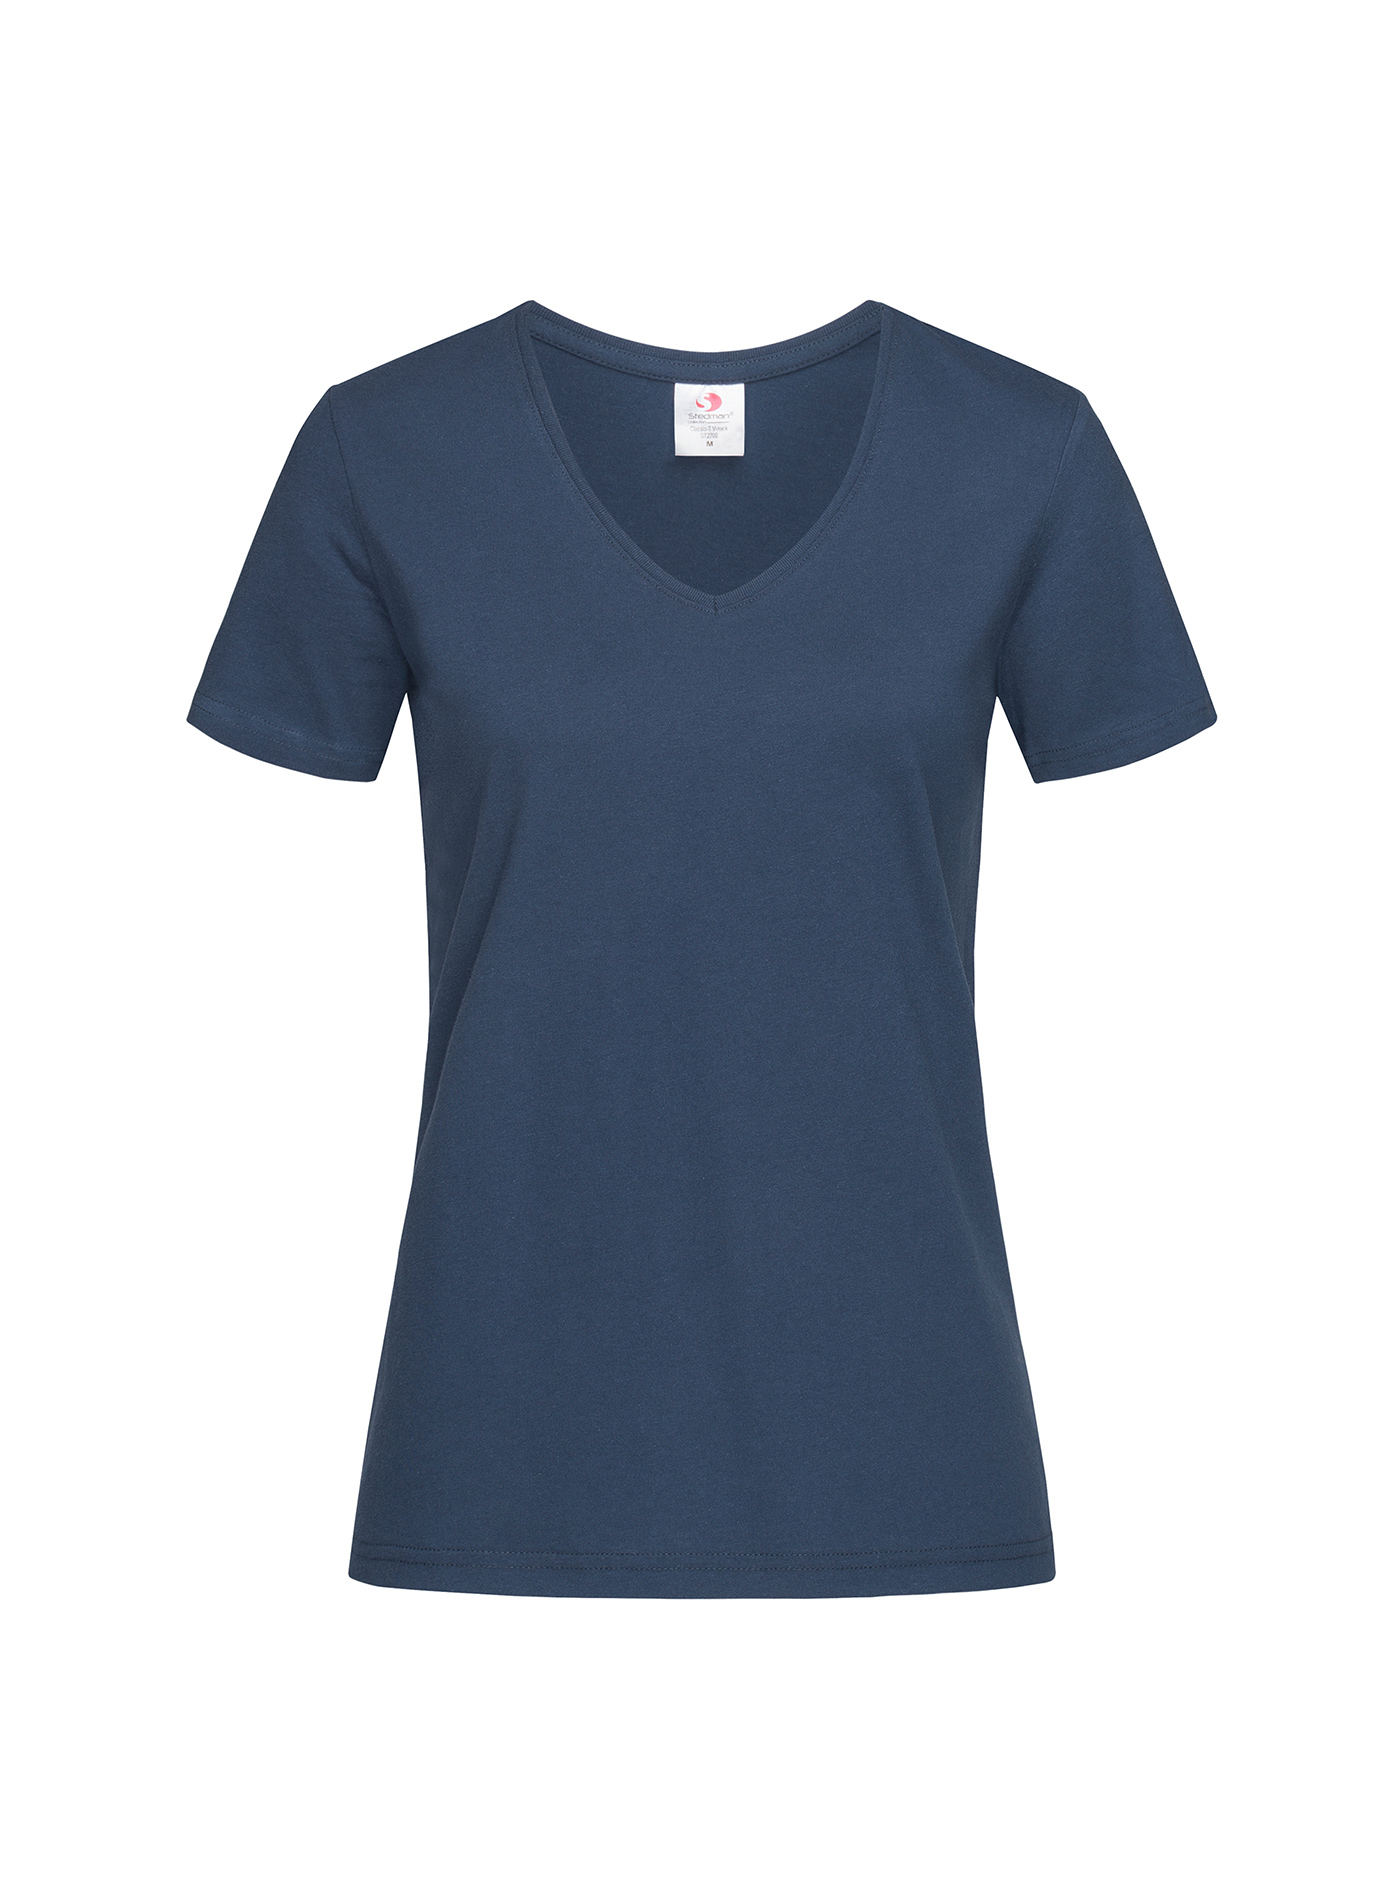 Dámské tričko s V-výstřihem Stedman - Námořnická modrá S